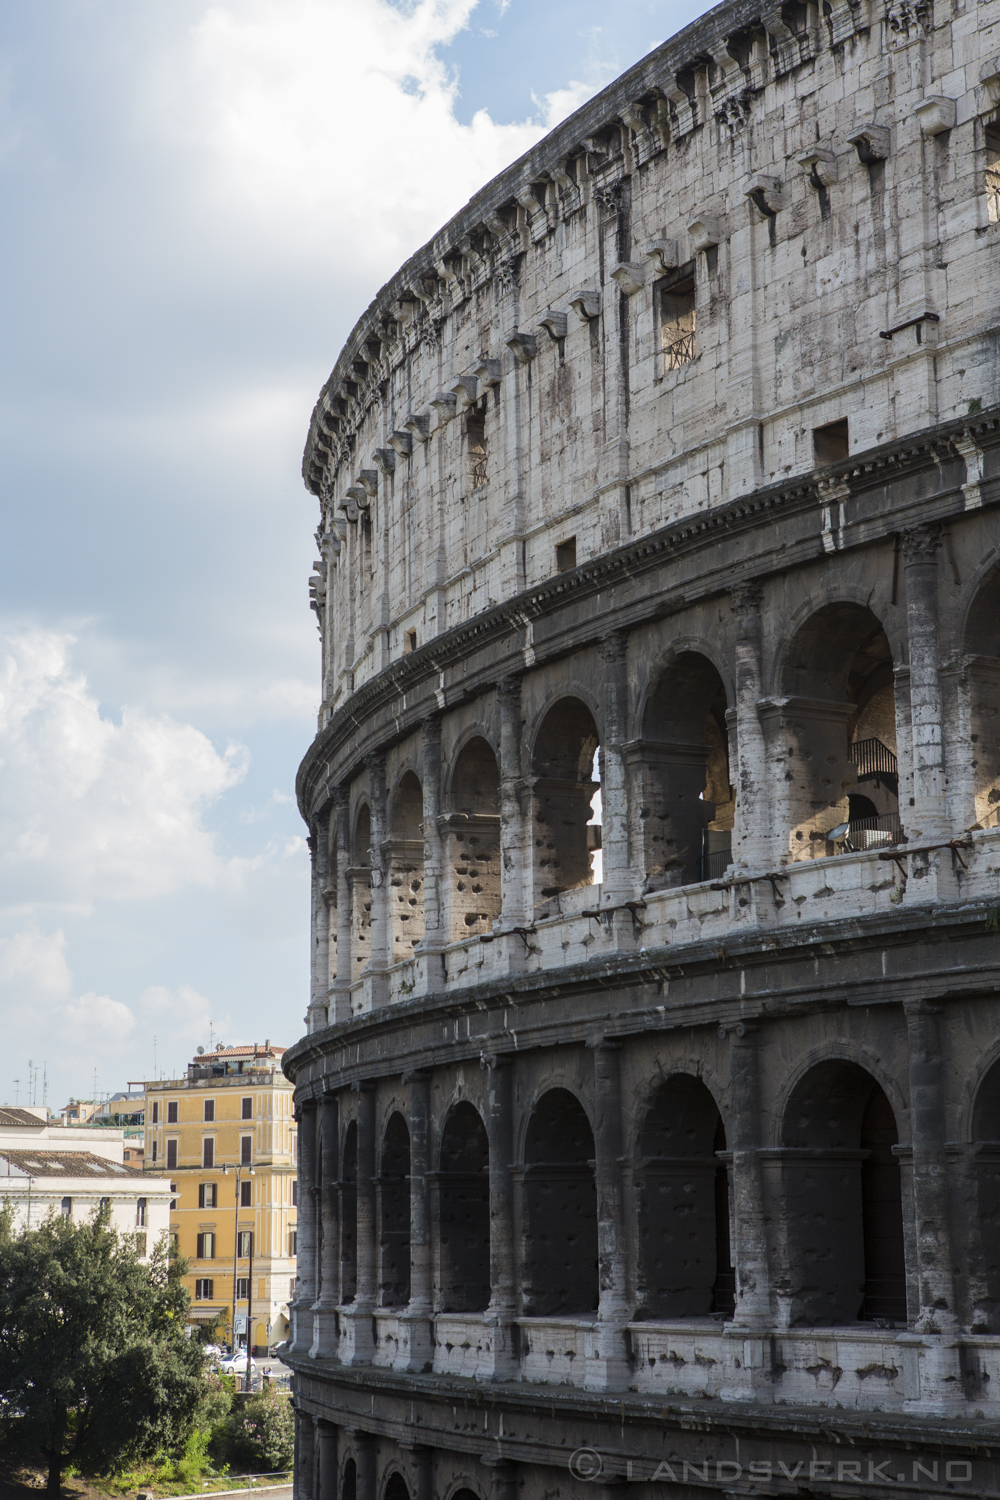 Colosseum. Rome, Italy. 

(Canon EOS 5D Mark III / Canon EF 24-70mm f/2.8 L USM)